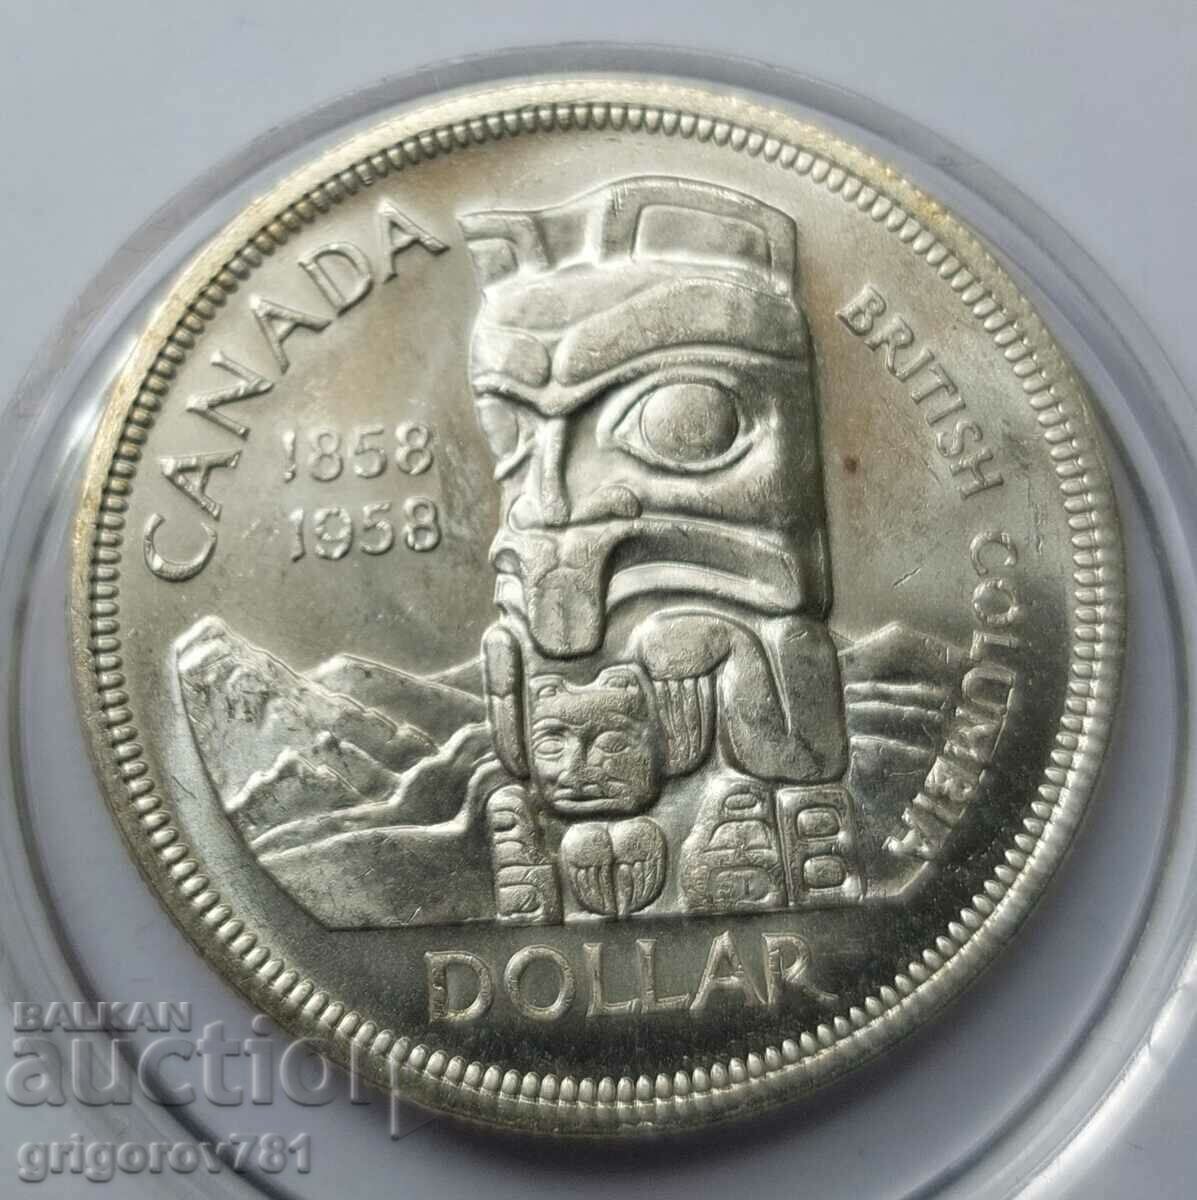 Ασημένιο 1 δολάριο Καναδάς 1958 - ασημένιο νόμισμα